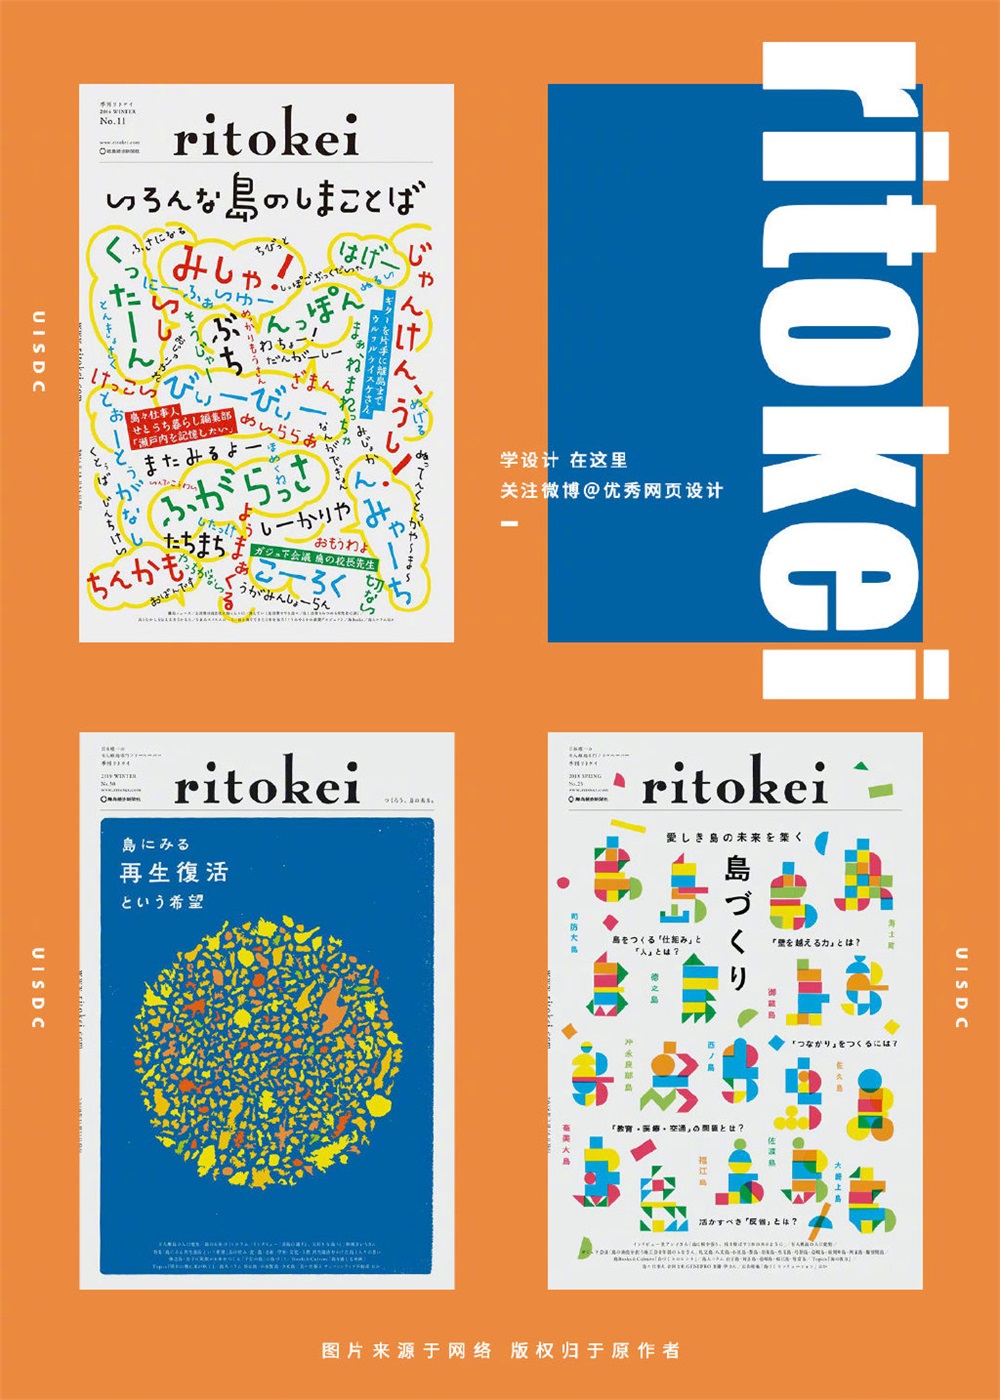 9组 ritokei 杂志的封面插画